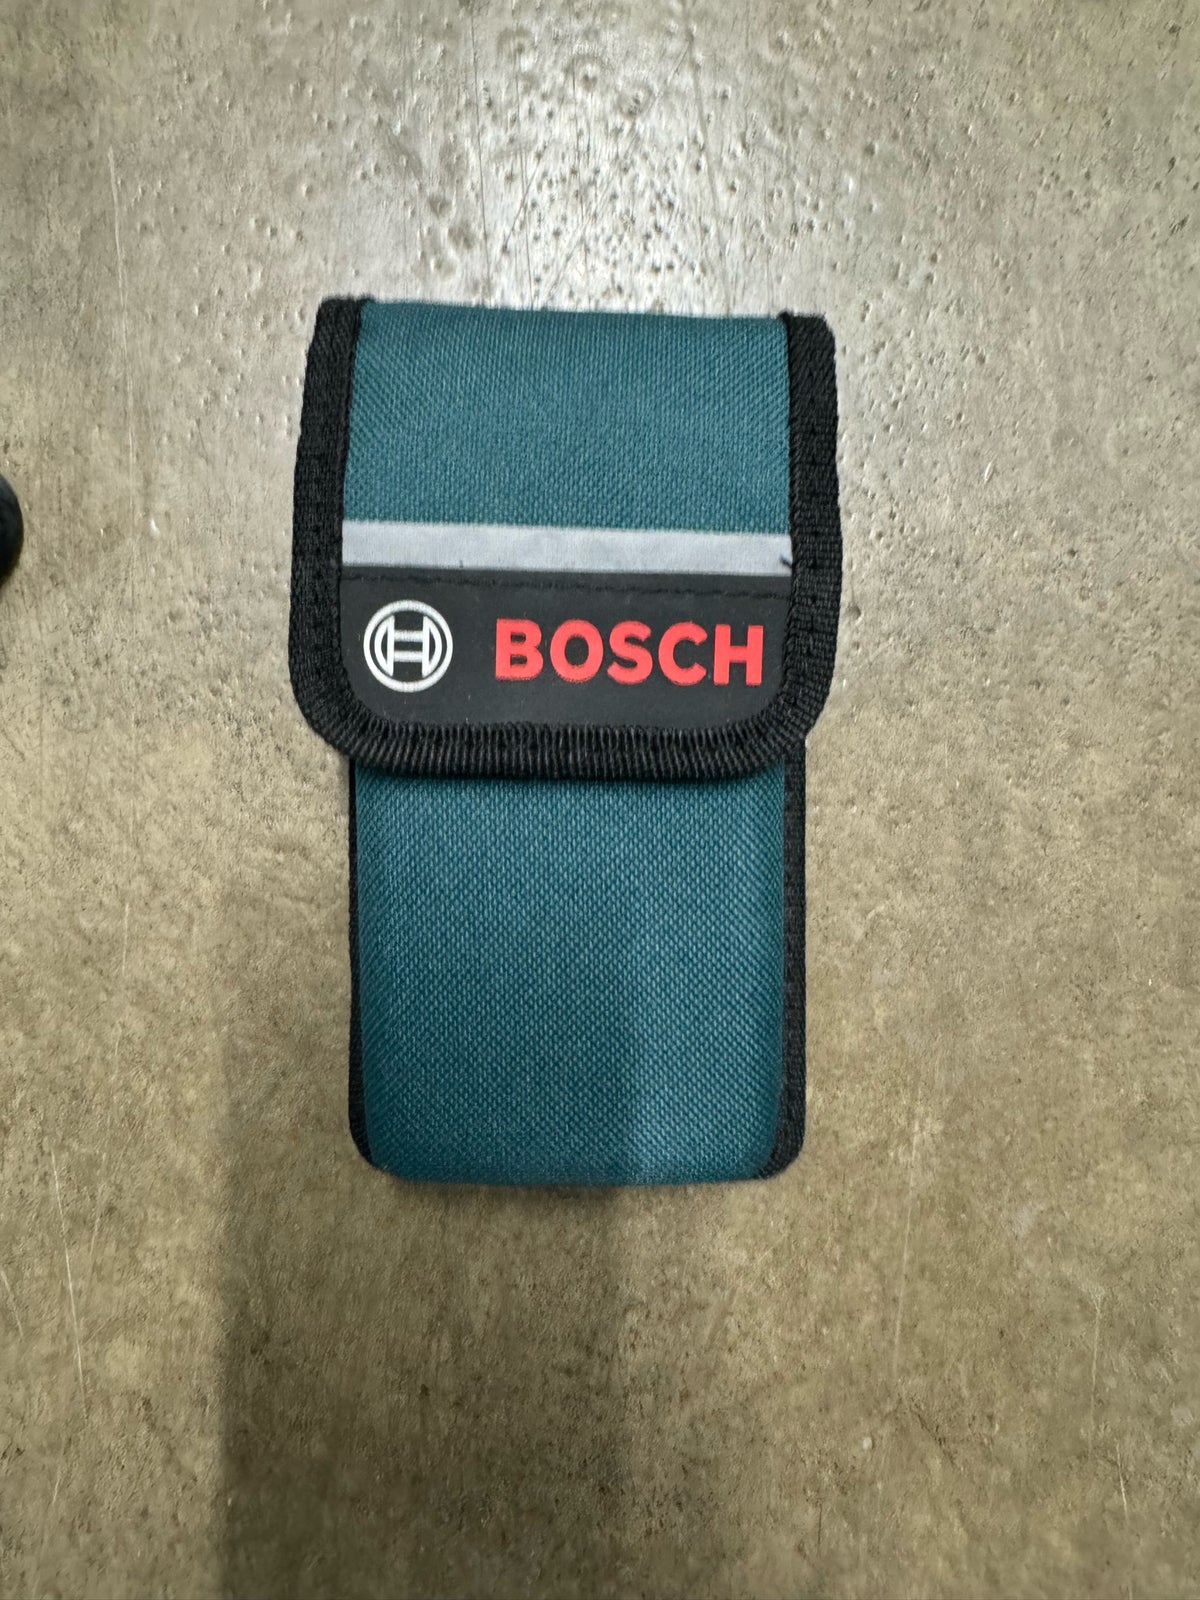 Andet håndværktøj, Bosch